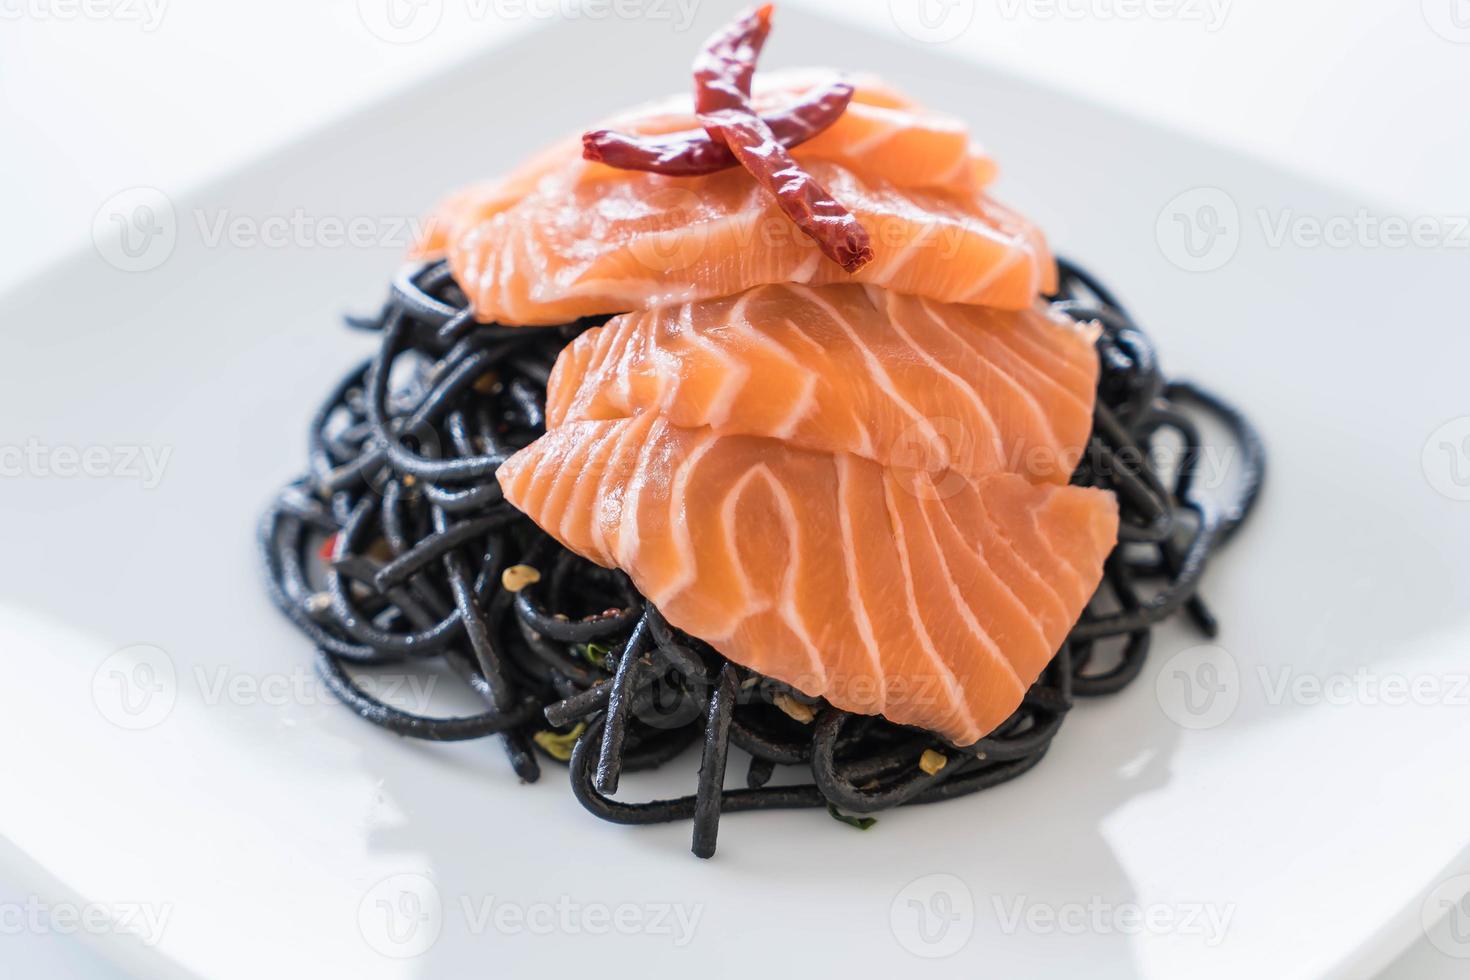 spaghetti neri piccanti al salmone - fusion food style foto